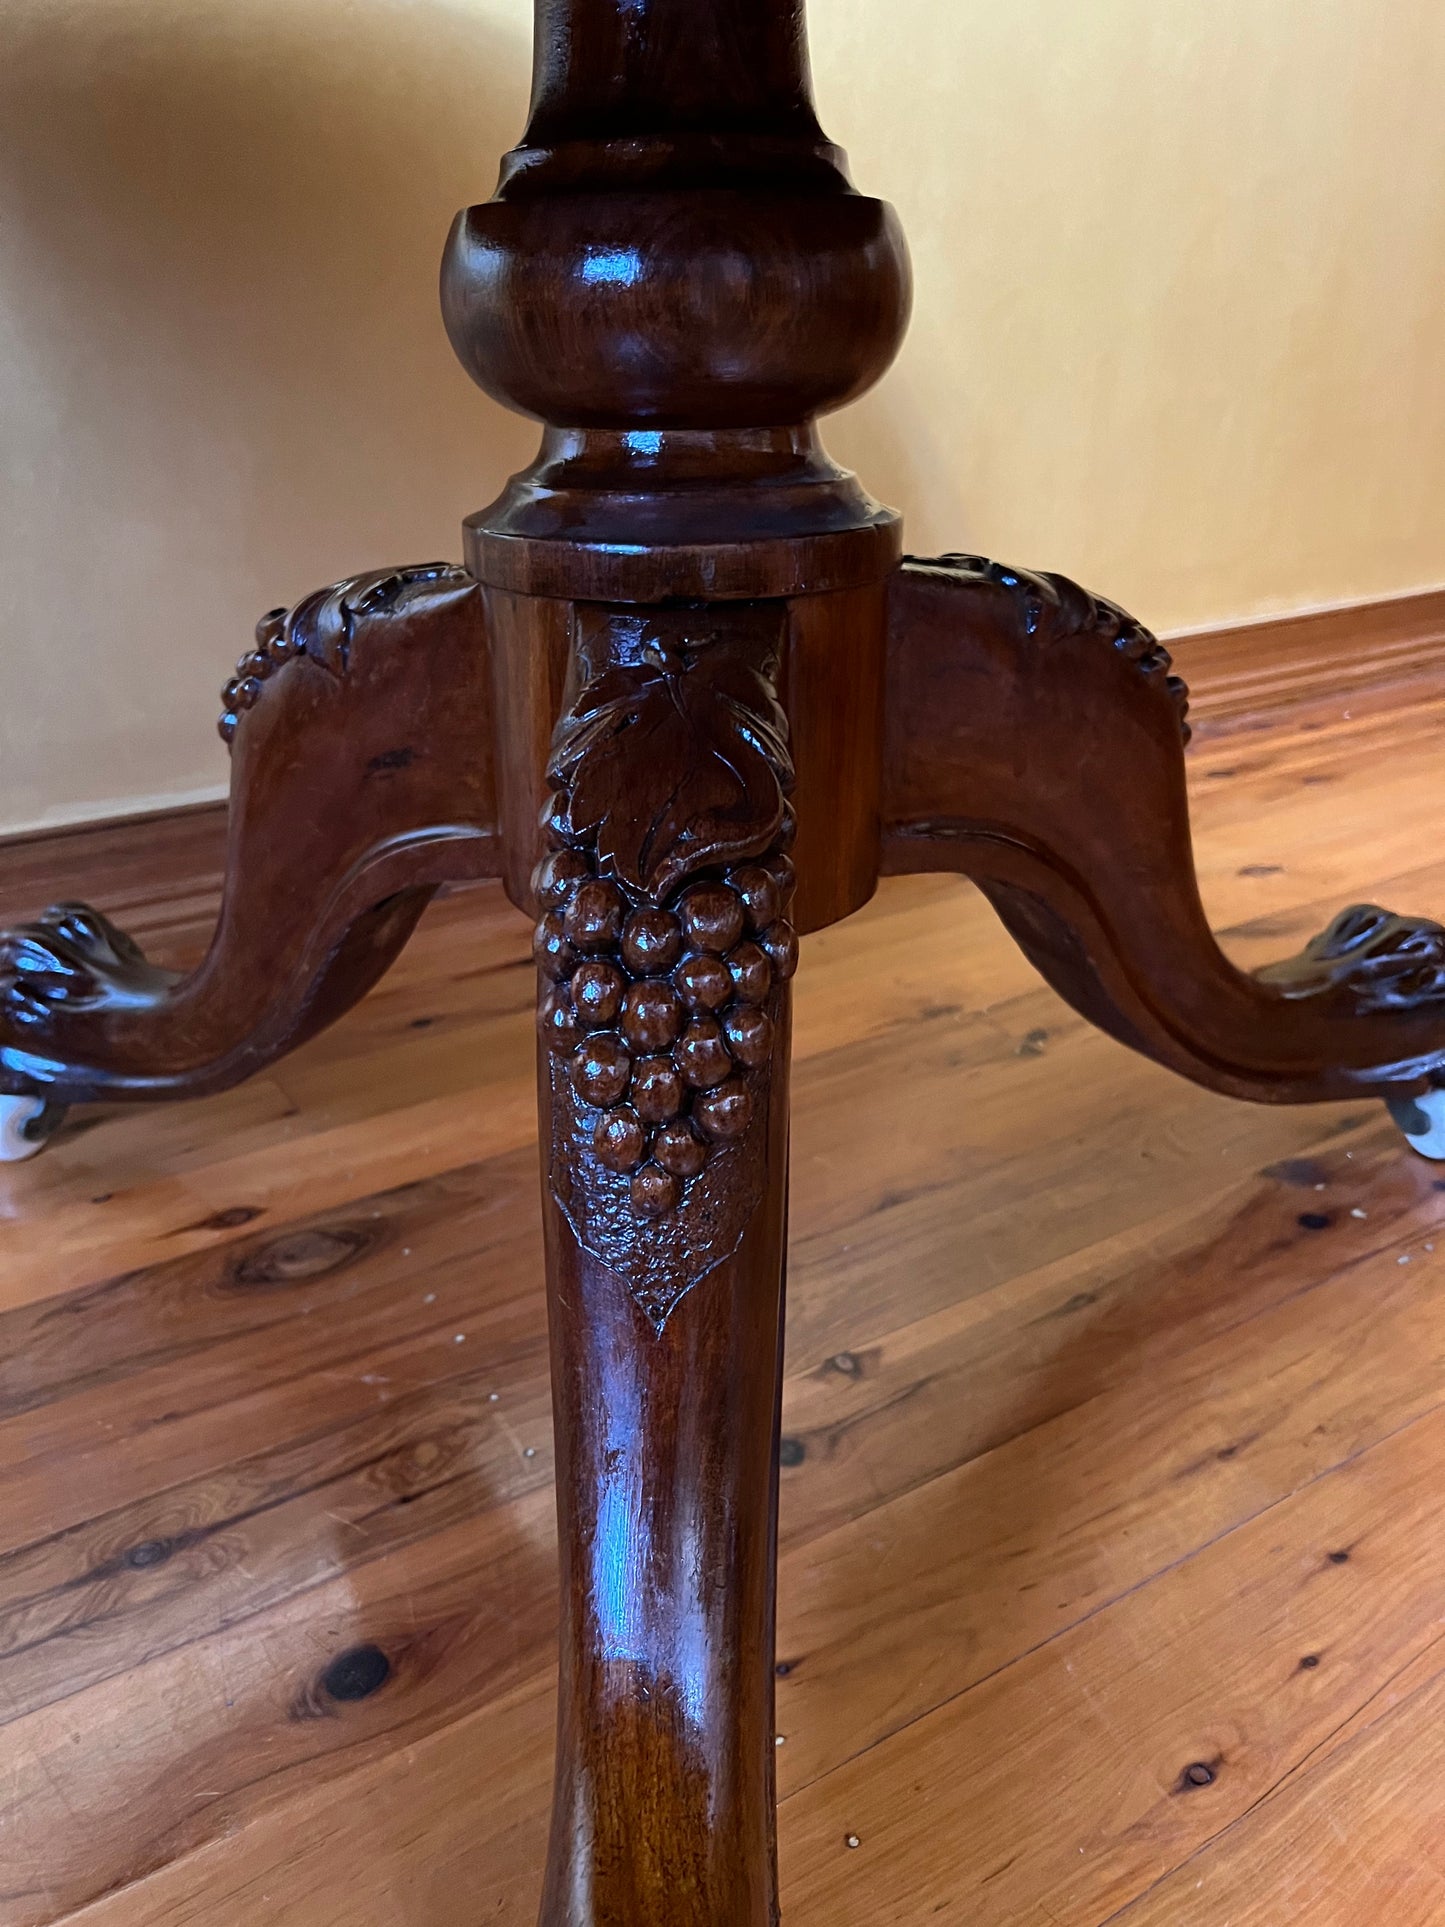 Victorian Cedar Tilt Top with Claw Feet Dining Table